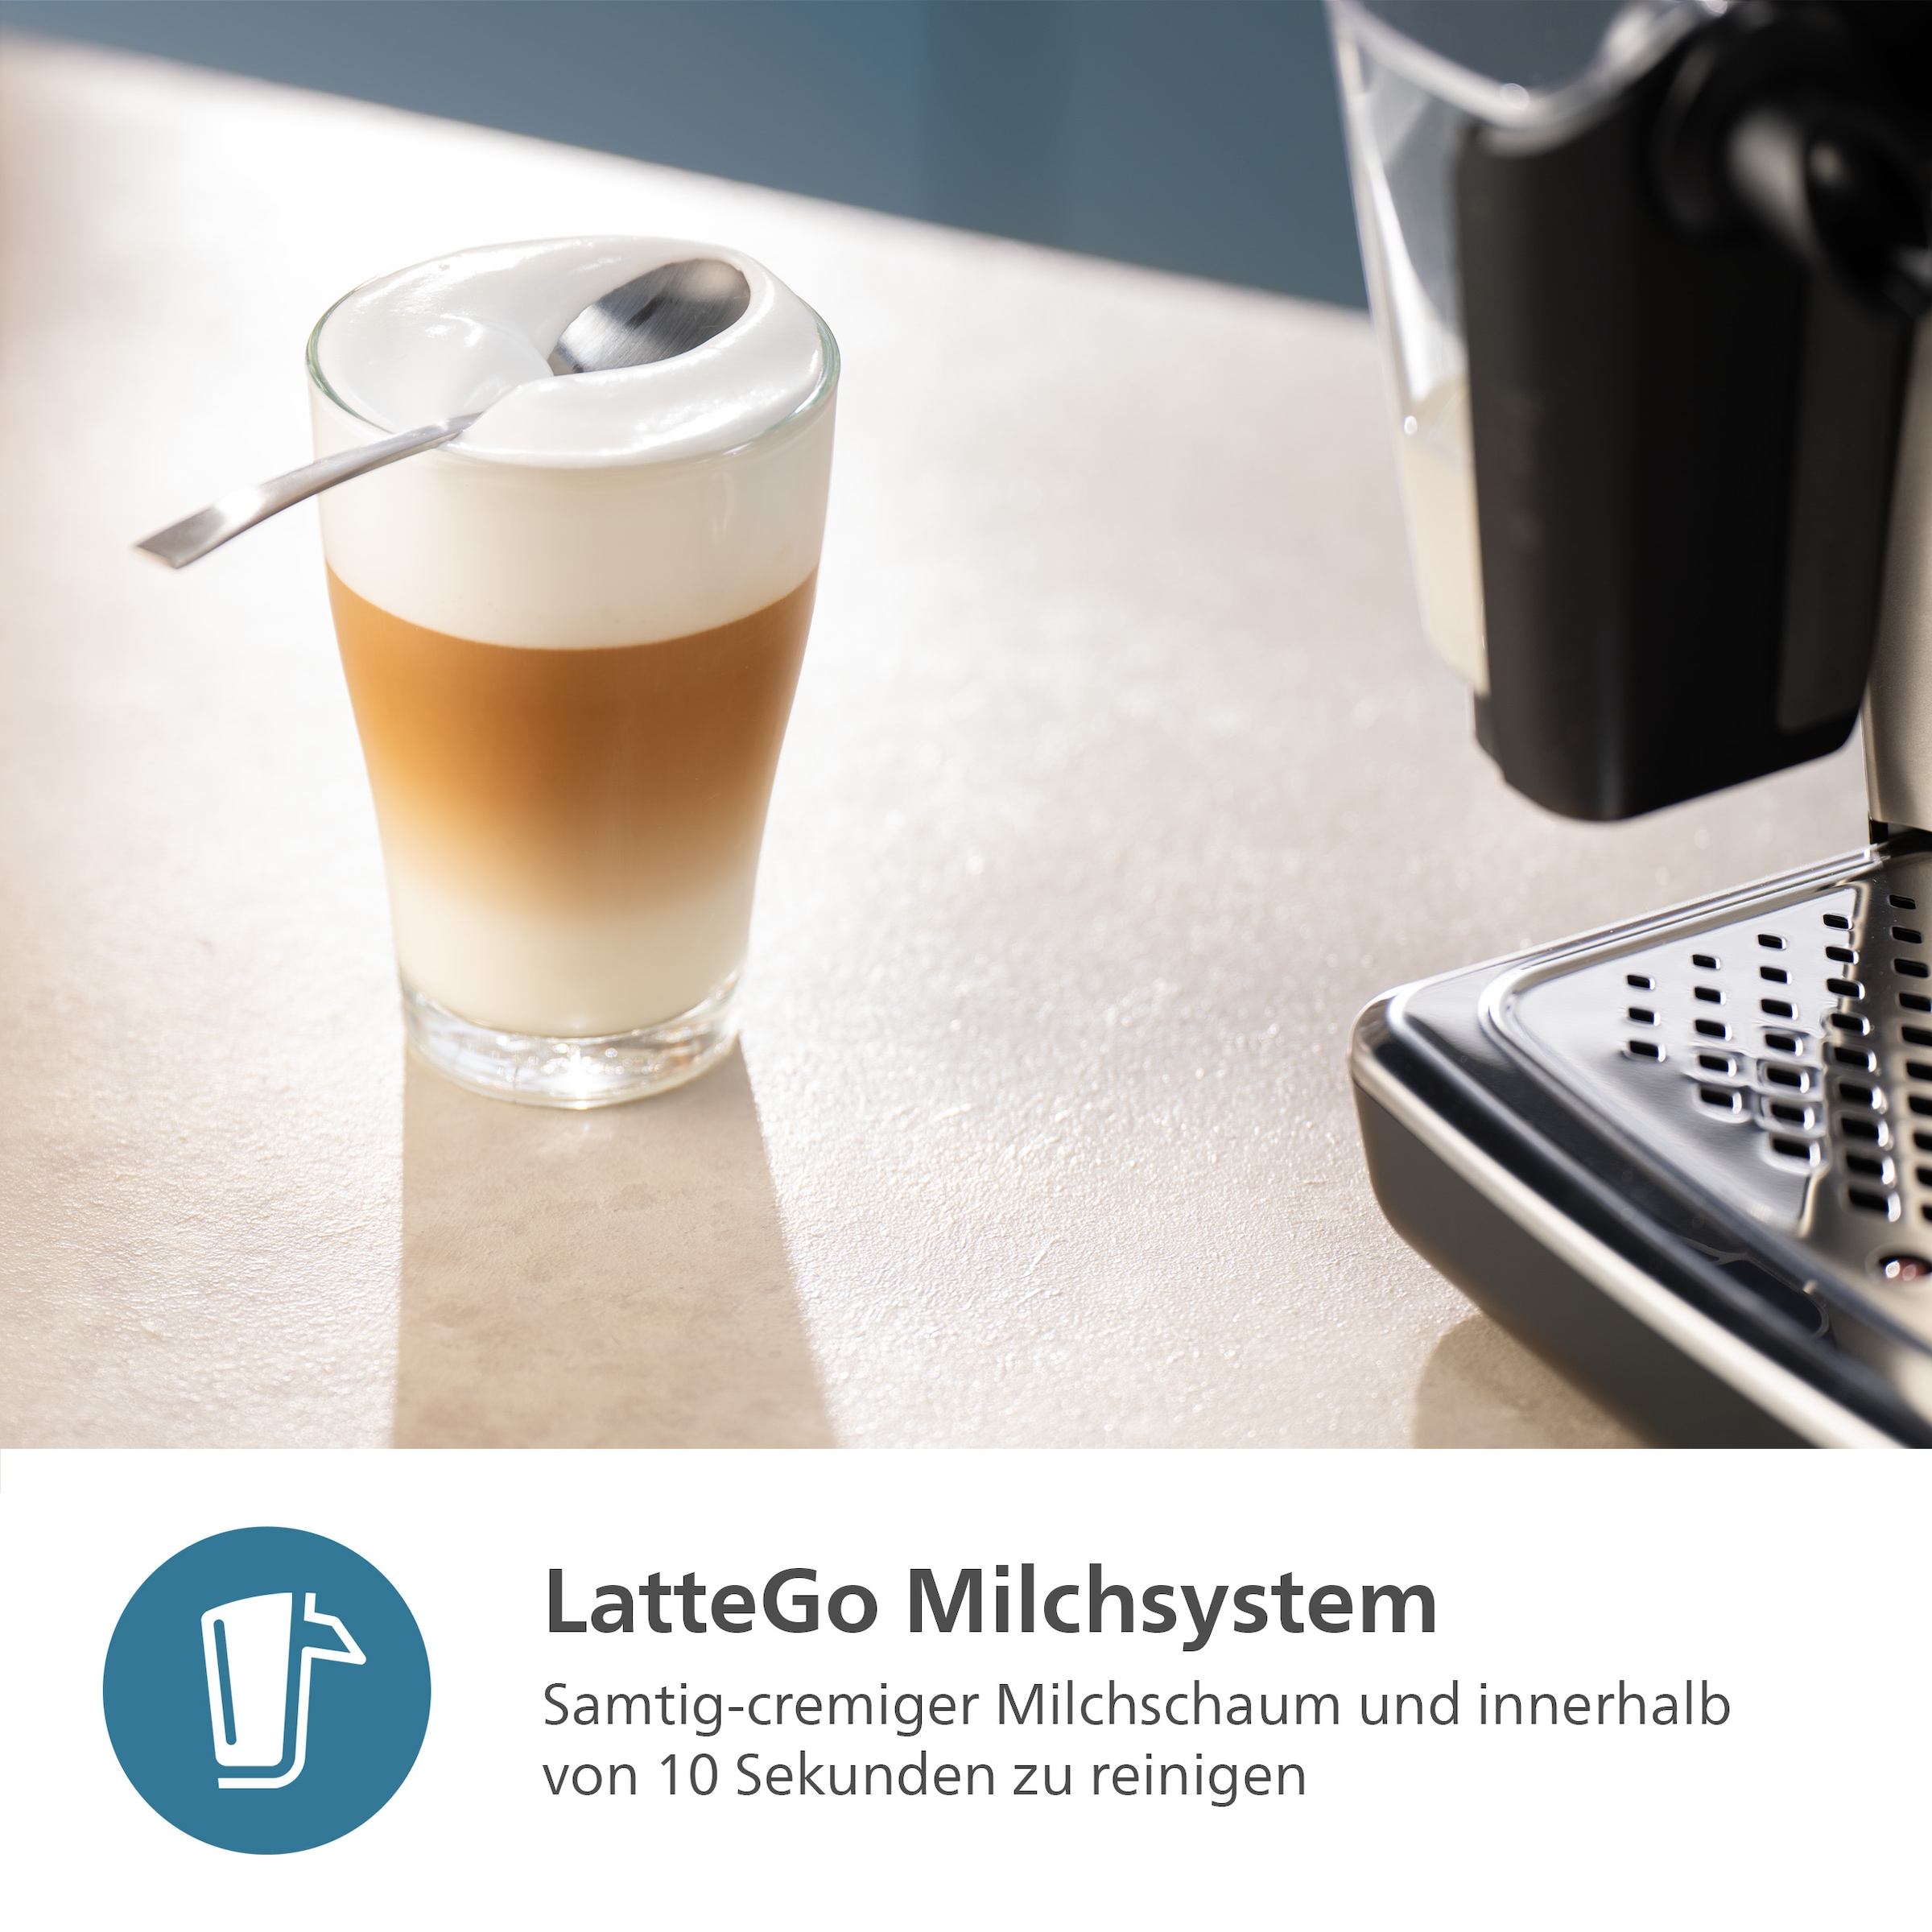 Philips Kaffeevollautomat »5400 Series EP5144/70, mit LatteGo-Milchsystem«, 12 Kaffeespezialitäten und 4 Benutzerprofilen; Grau/Kupfer verchromt